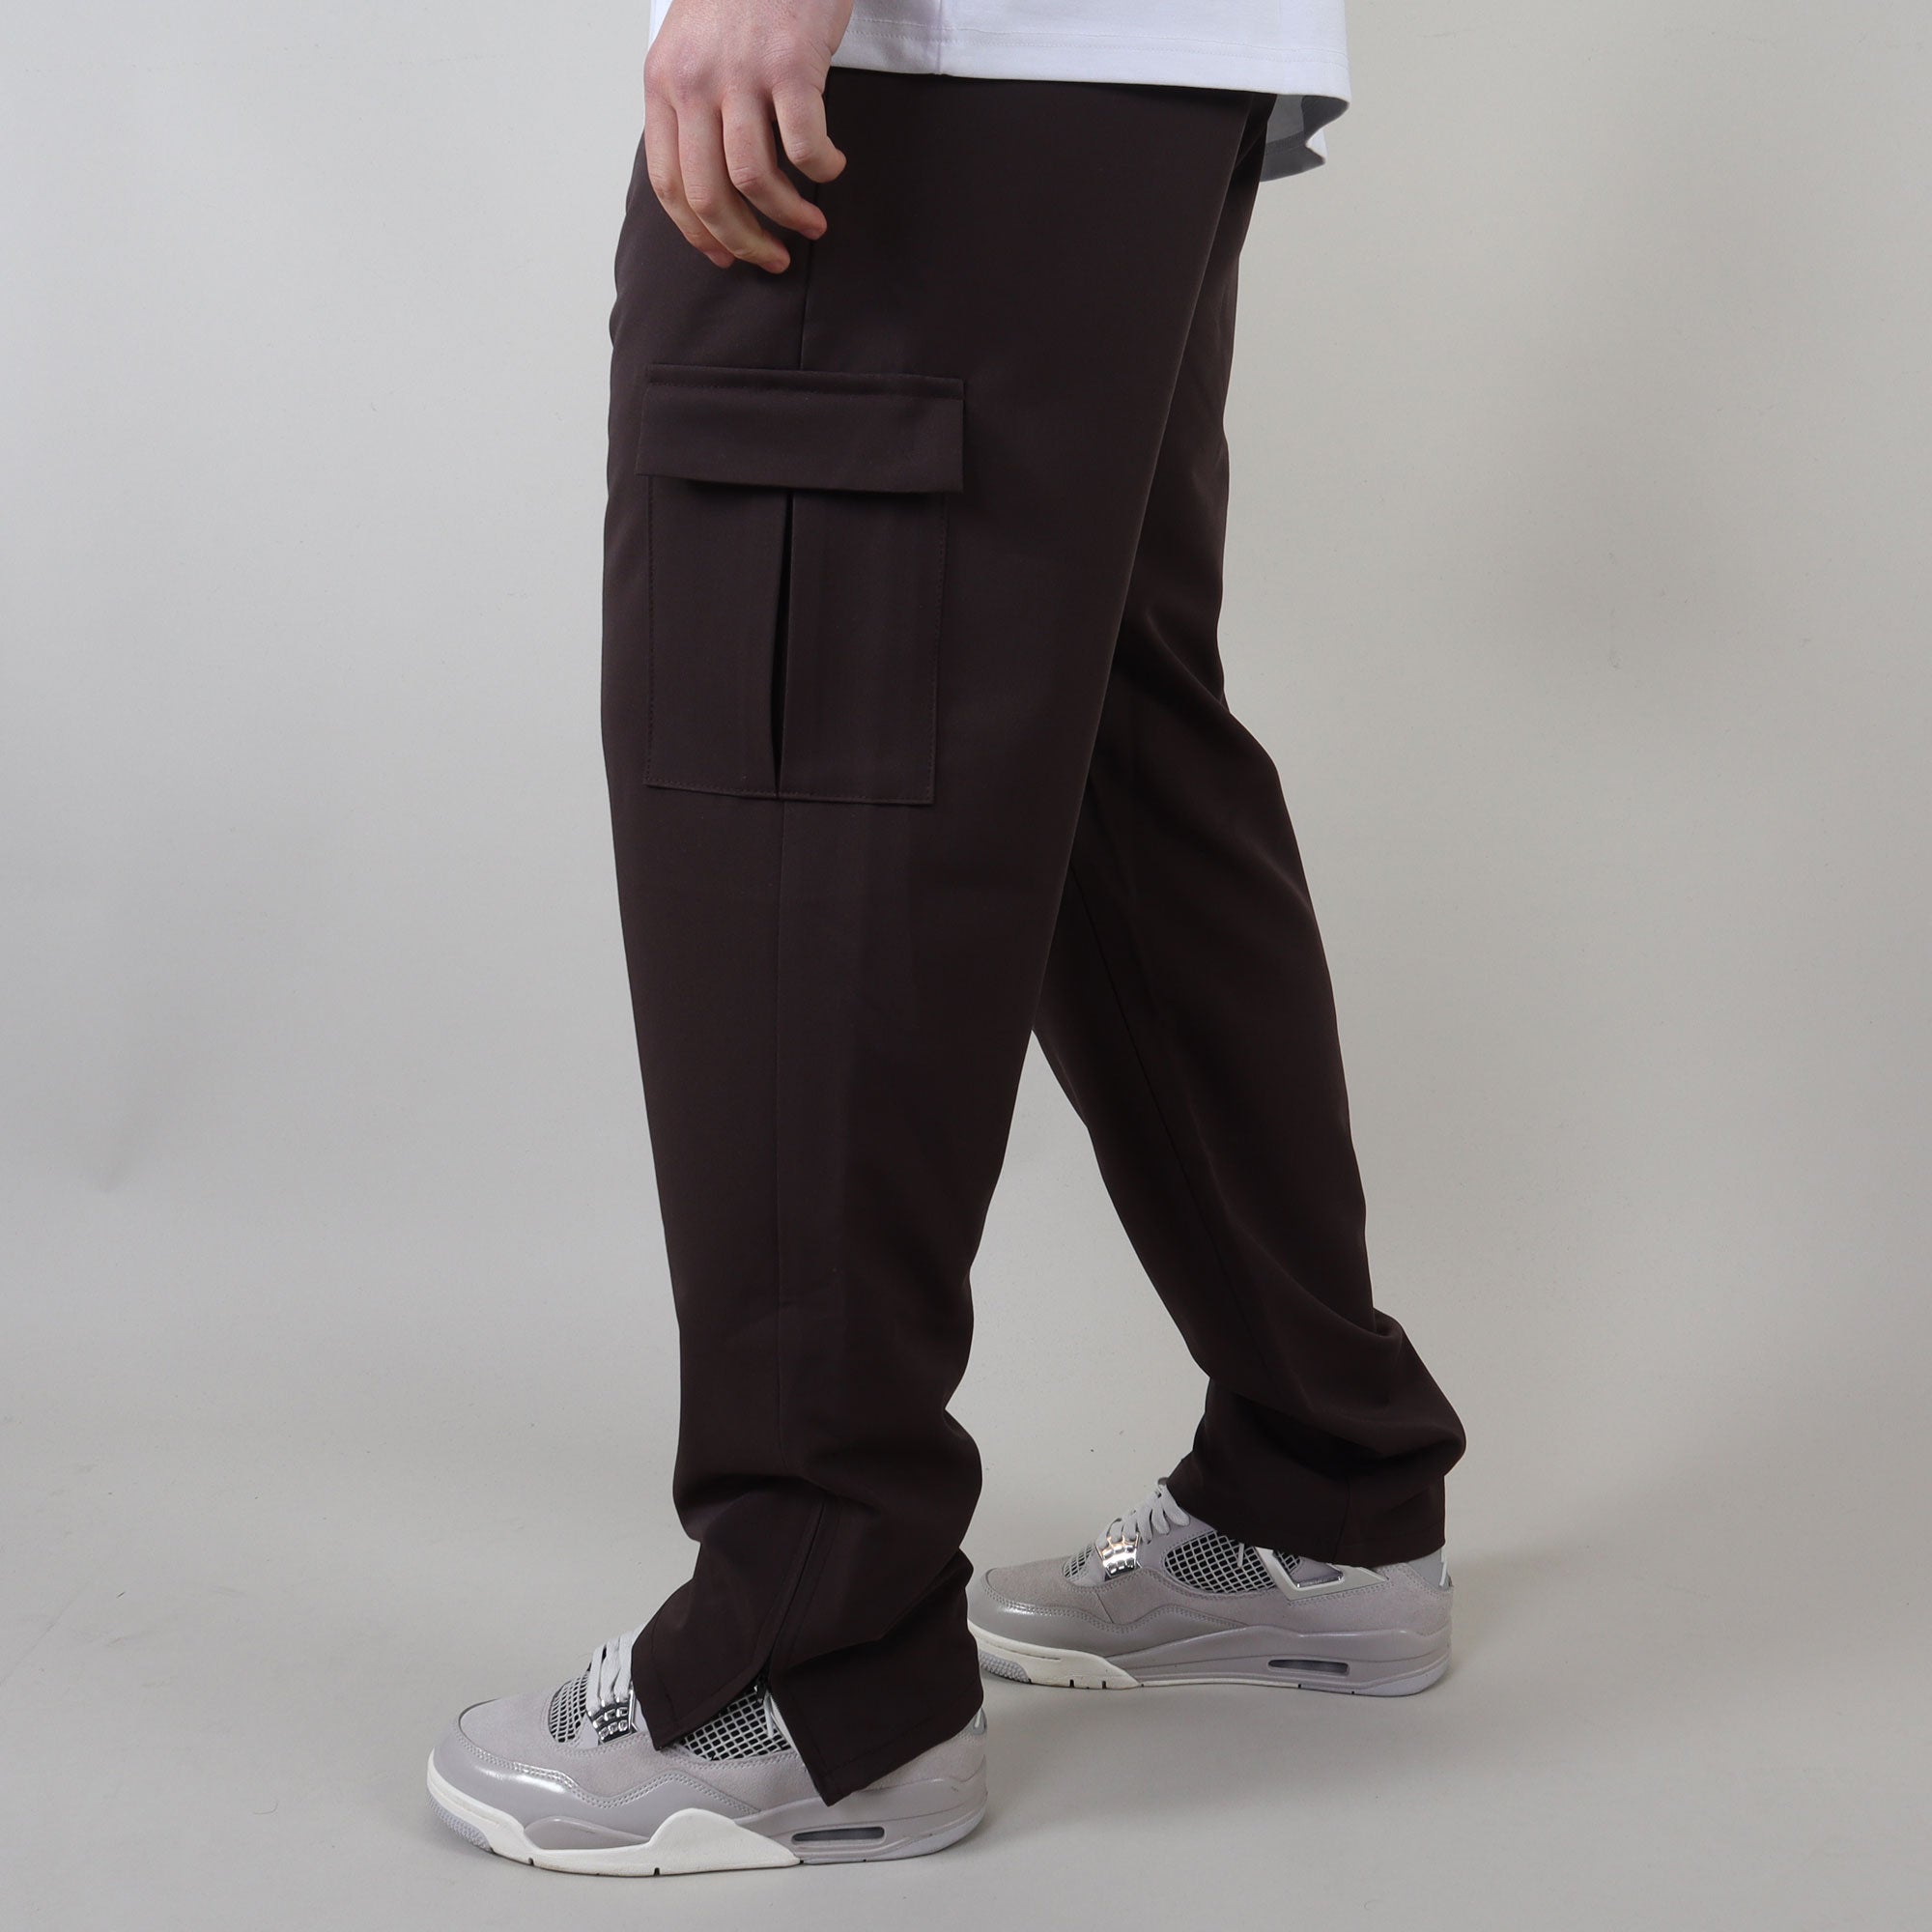 PRJCT pantalon cargo brown